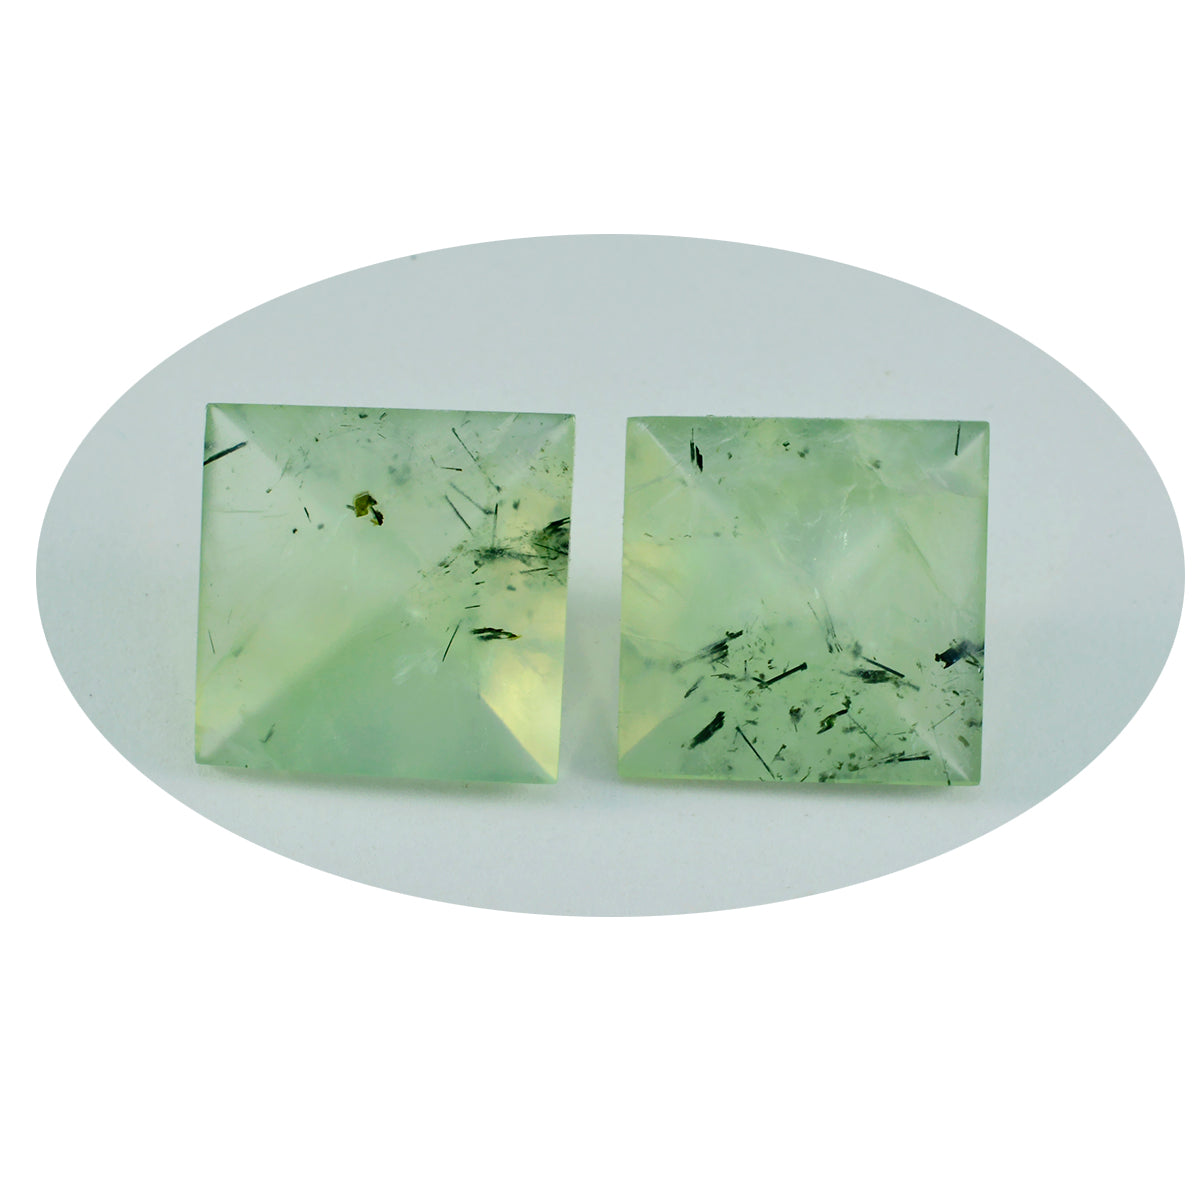 Riyogems 1 Stück grüner Prehnit, facettiert, 15 x 15 mm, quadratische Form, Edelstein von fantastischer Qualität